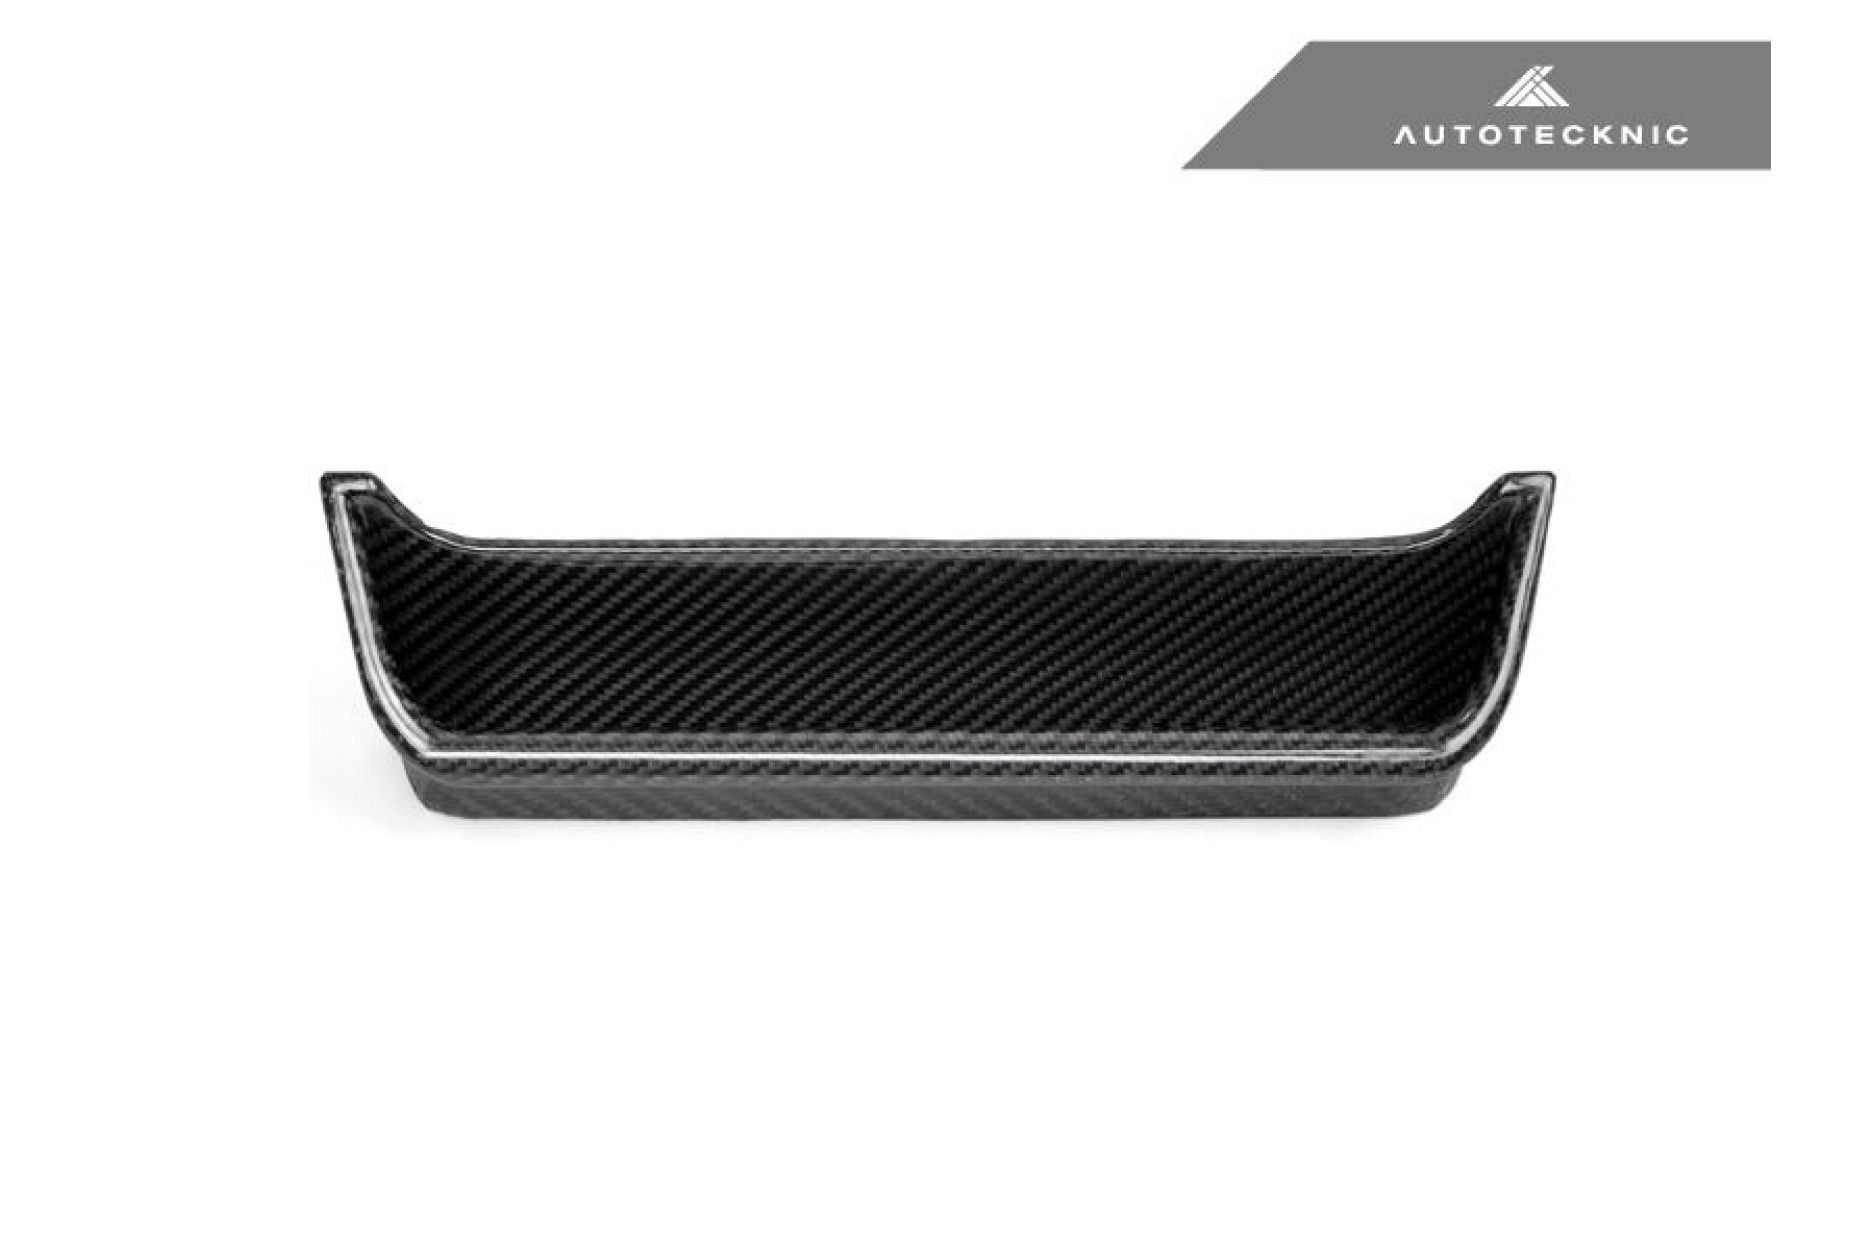 Autotecknic Trockencarbon Tür-Ablage für Mercedes Benz G-Klasse W463 -  online kaufen bei CFD